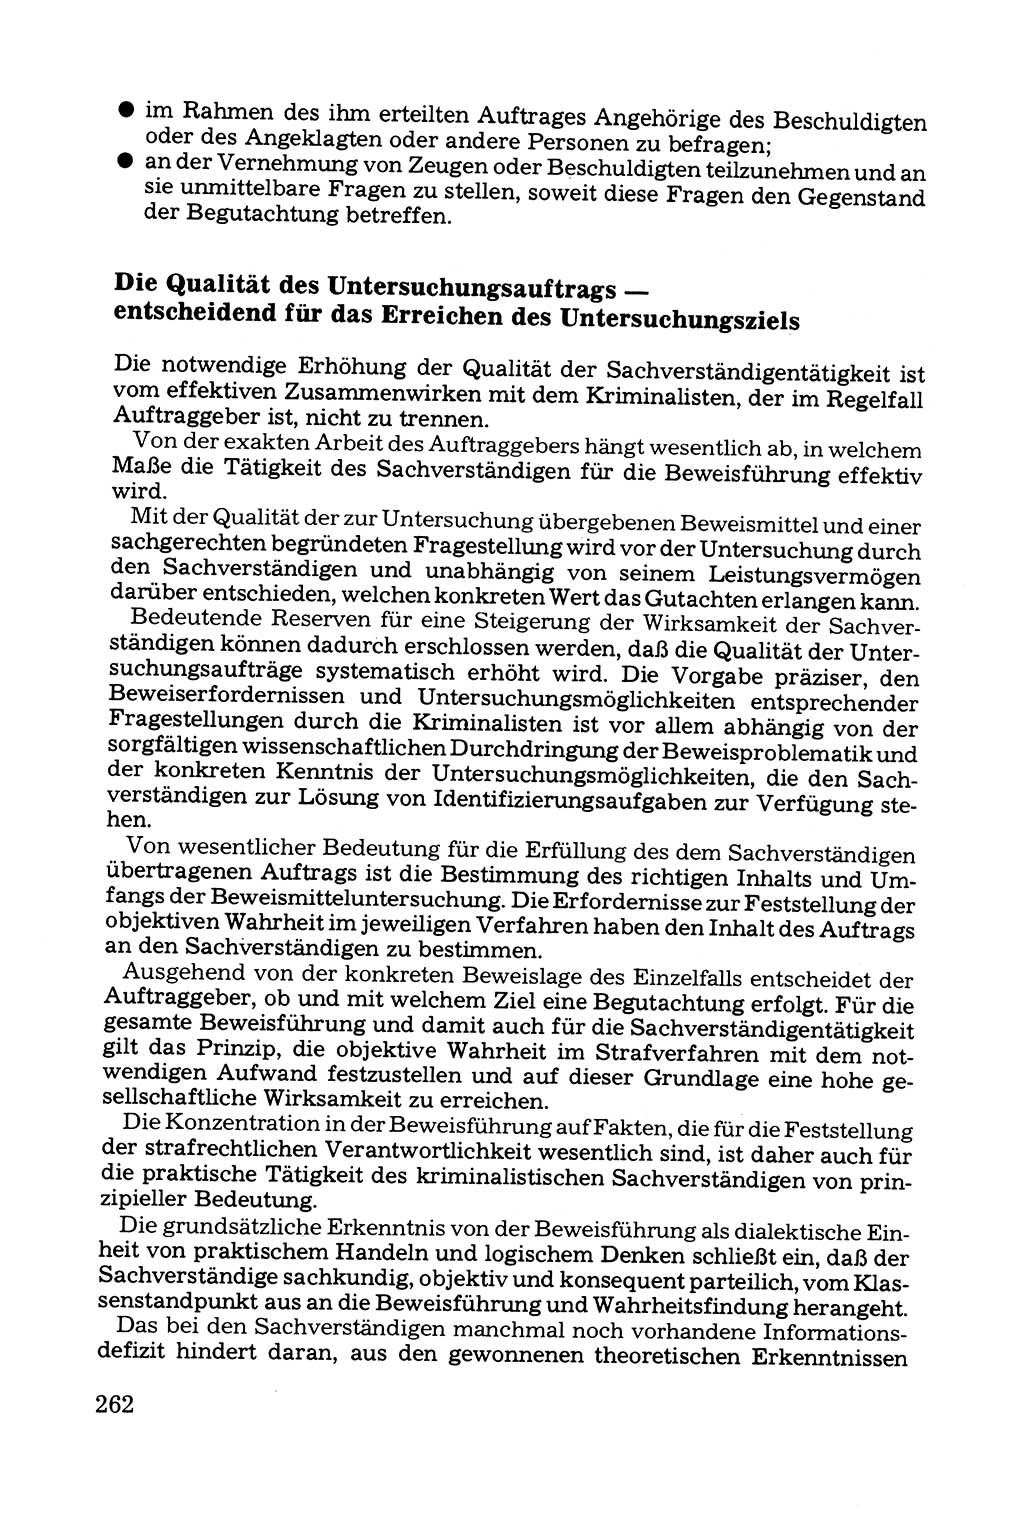 Grundfragen der Beweisführung im Ermittlungsverfahren [Deutsche Demokratische Republik (DDR)] 1980, Seite 262 (Bws.-Fhrg. EV DDR 1980, S. 262)